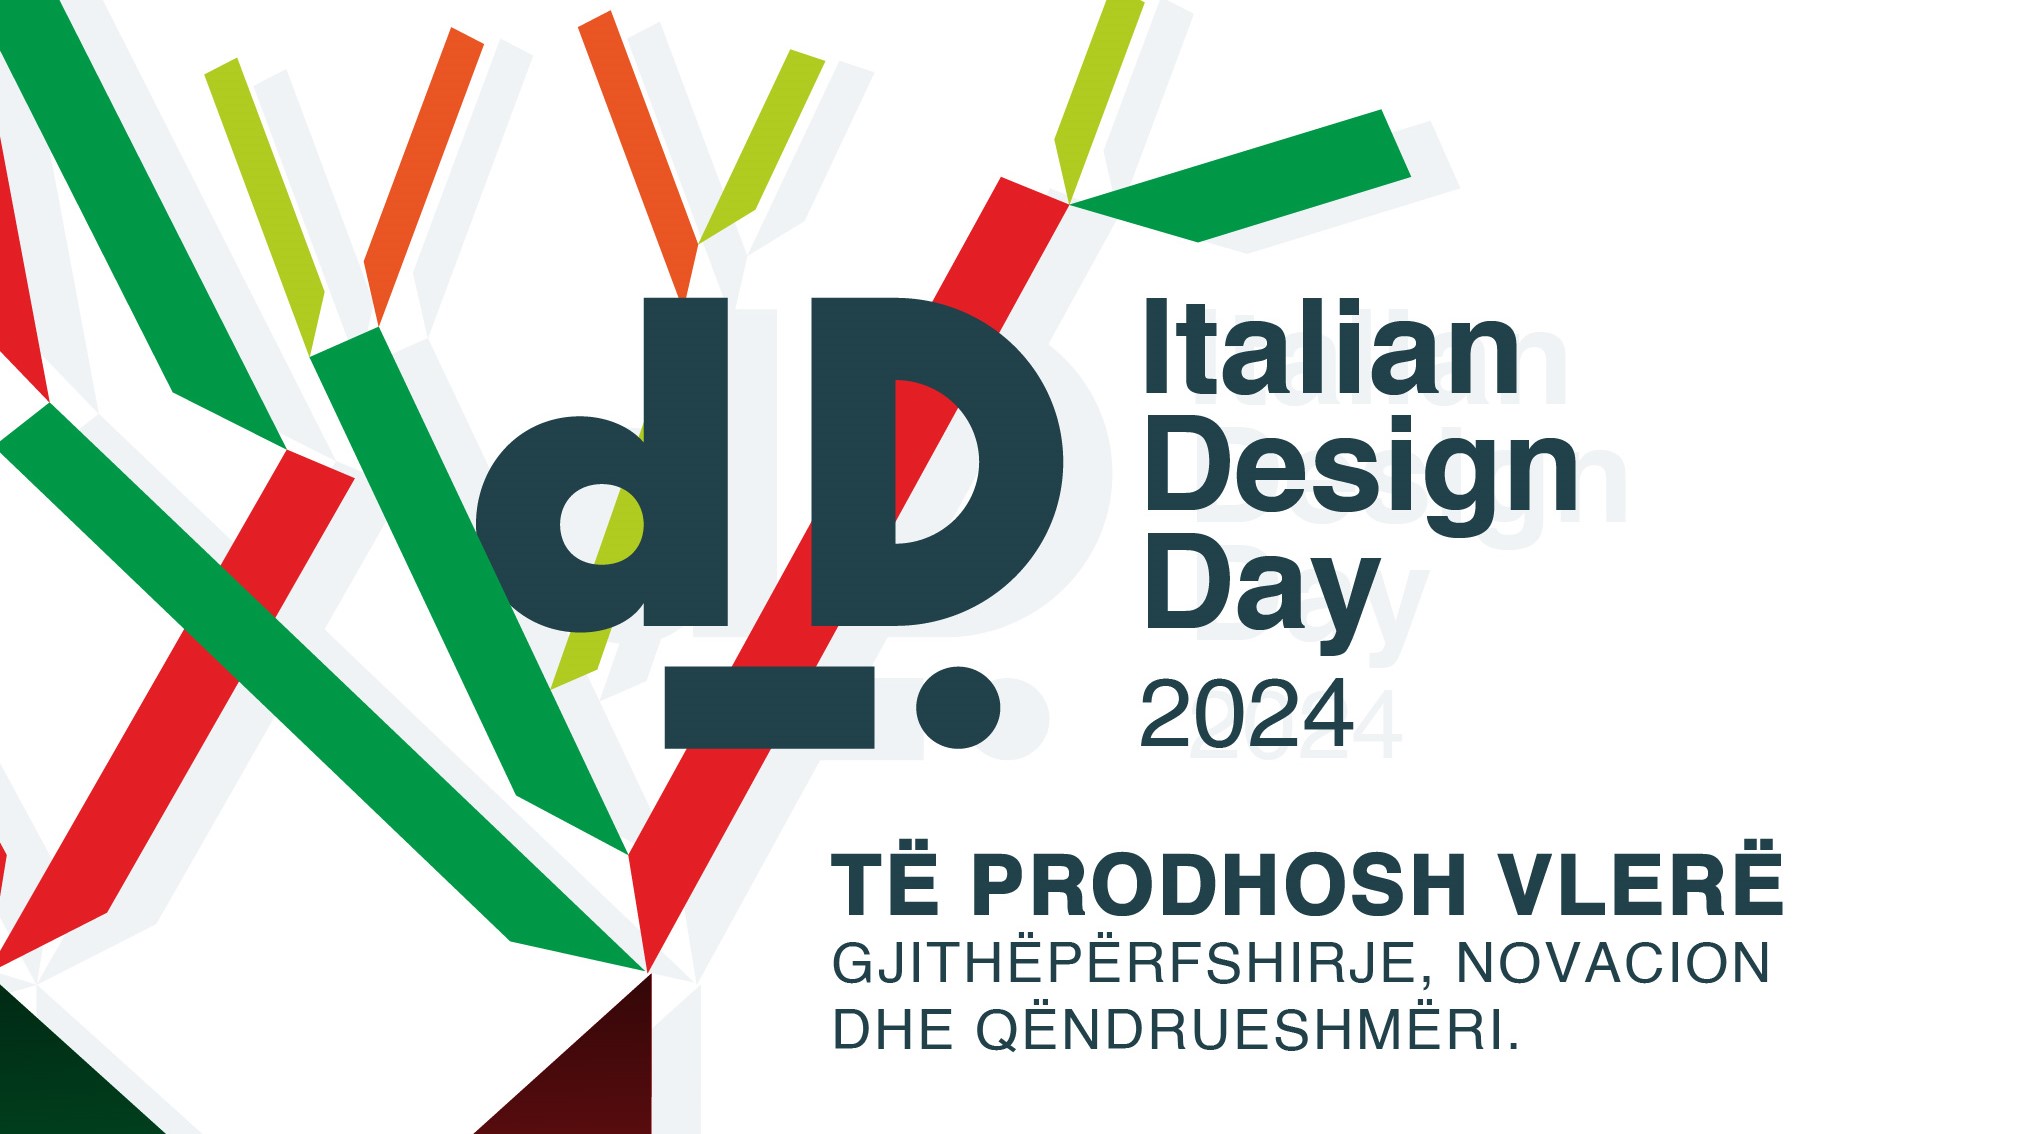 Italian Design Day ne Shqiperi | Te prodhosh vlere - Gjithepërfshirje, novacion dhe qendrueshmeri